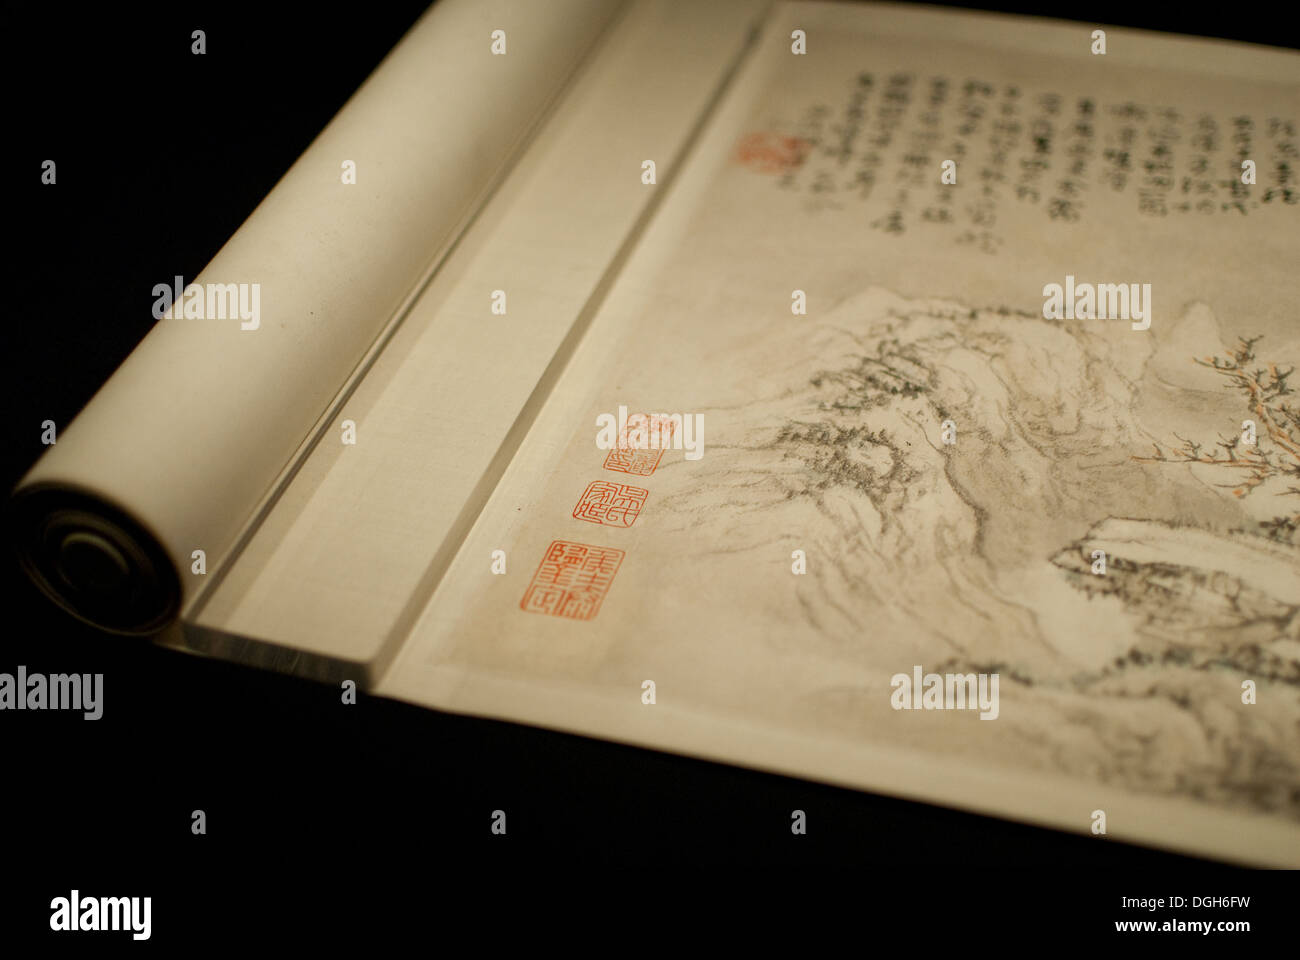 In autunno e in inverno, da monaco Zen artista Kuncan, dall'inizio della Dinastia Qing. Tesori di culture di tutto il mondo Foto Stock